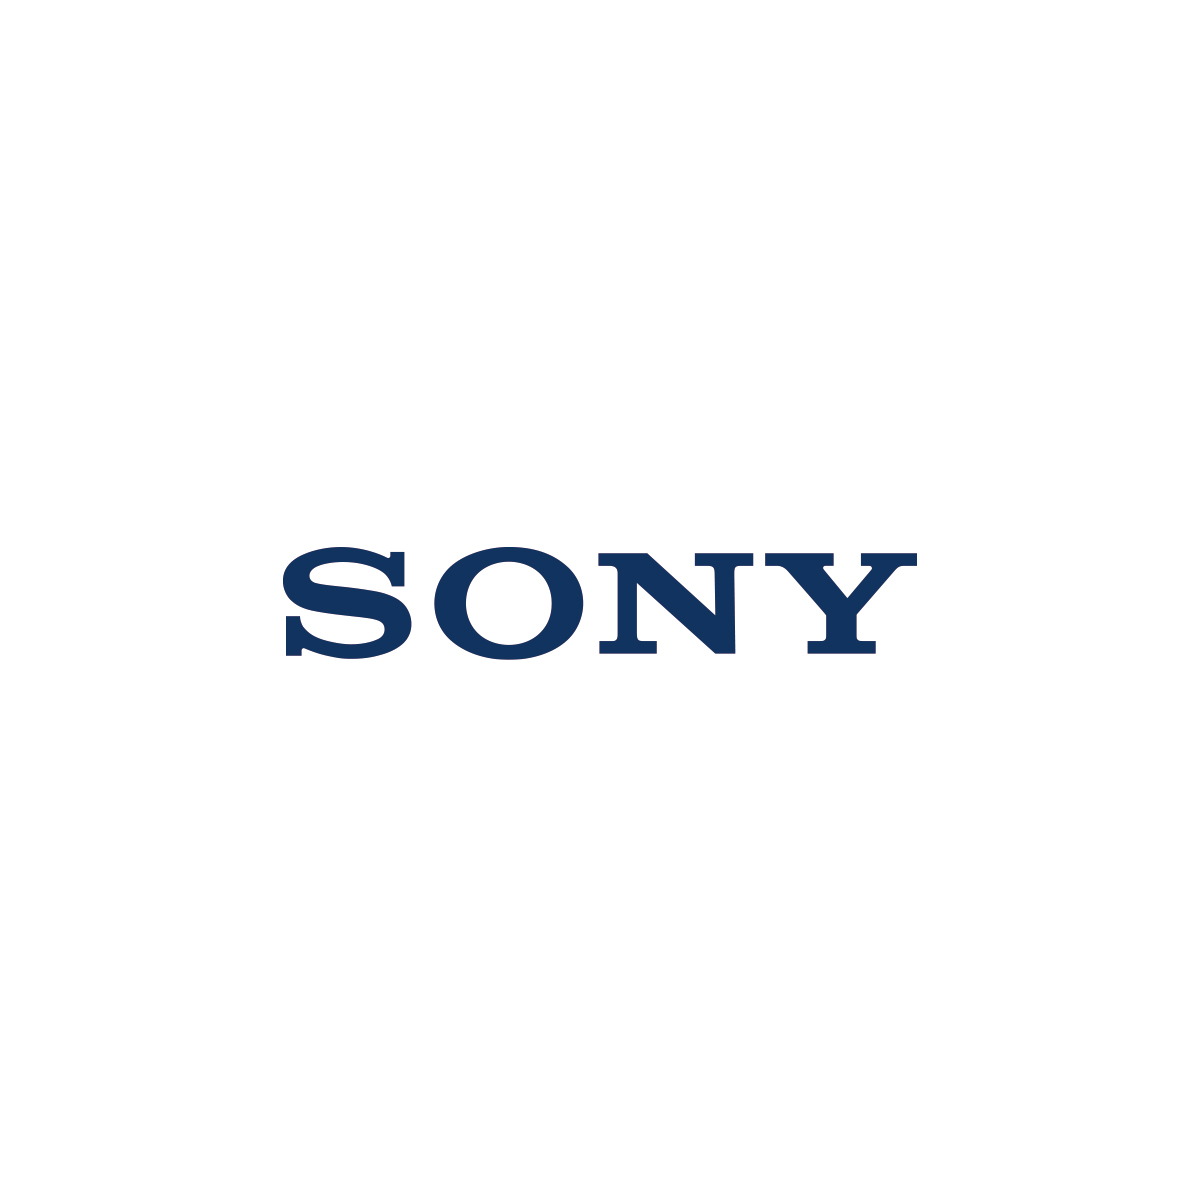 سوني Sony تستحوذ على شركة تطوير الألعاب Valkyrie Entertainment